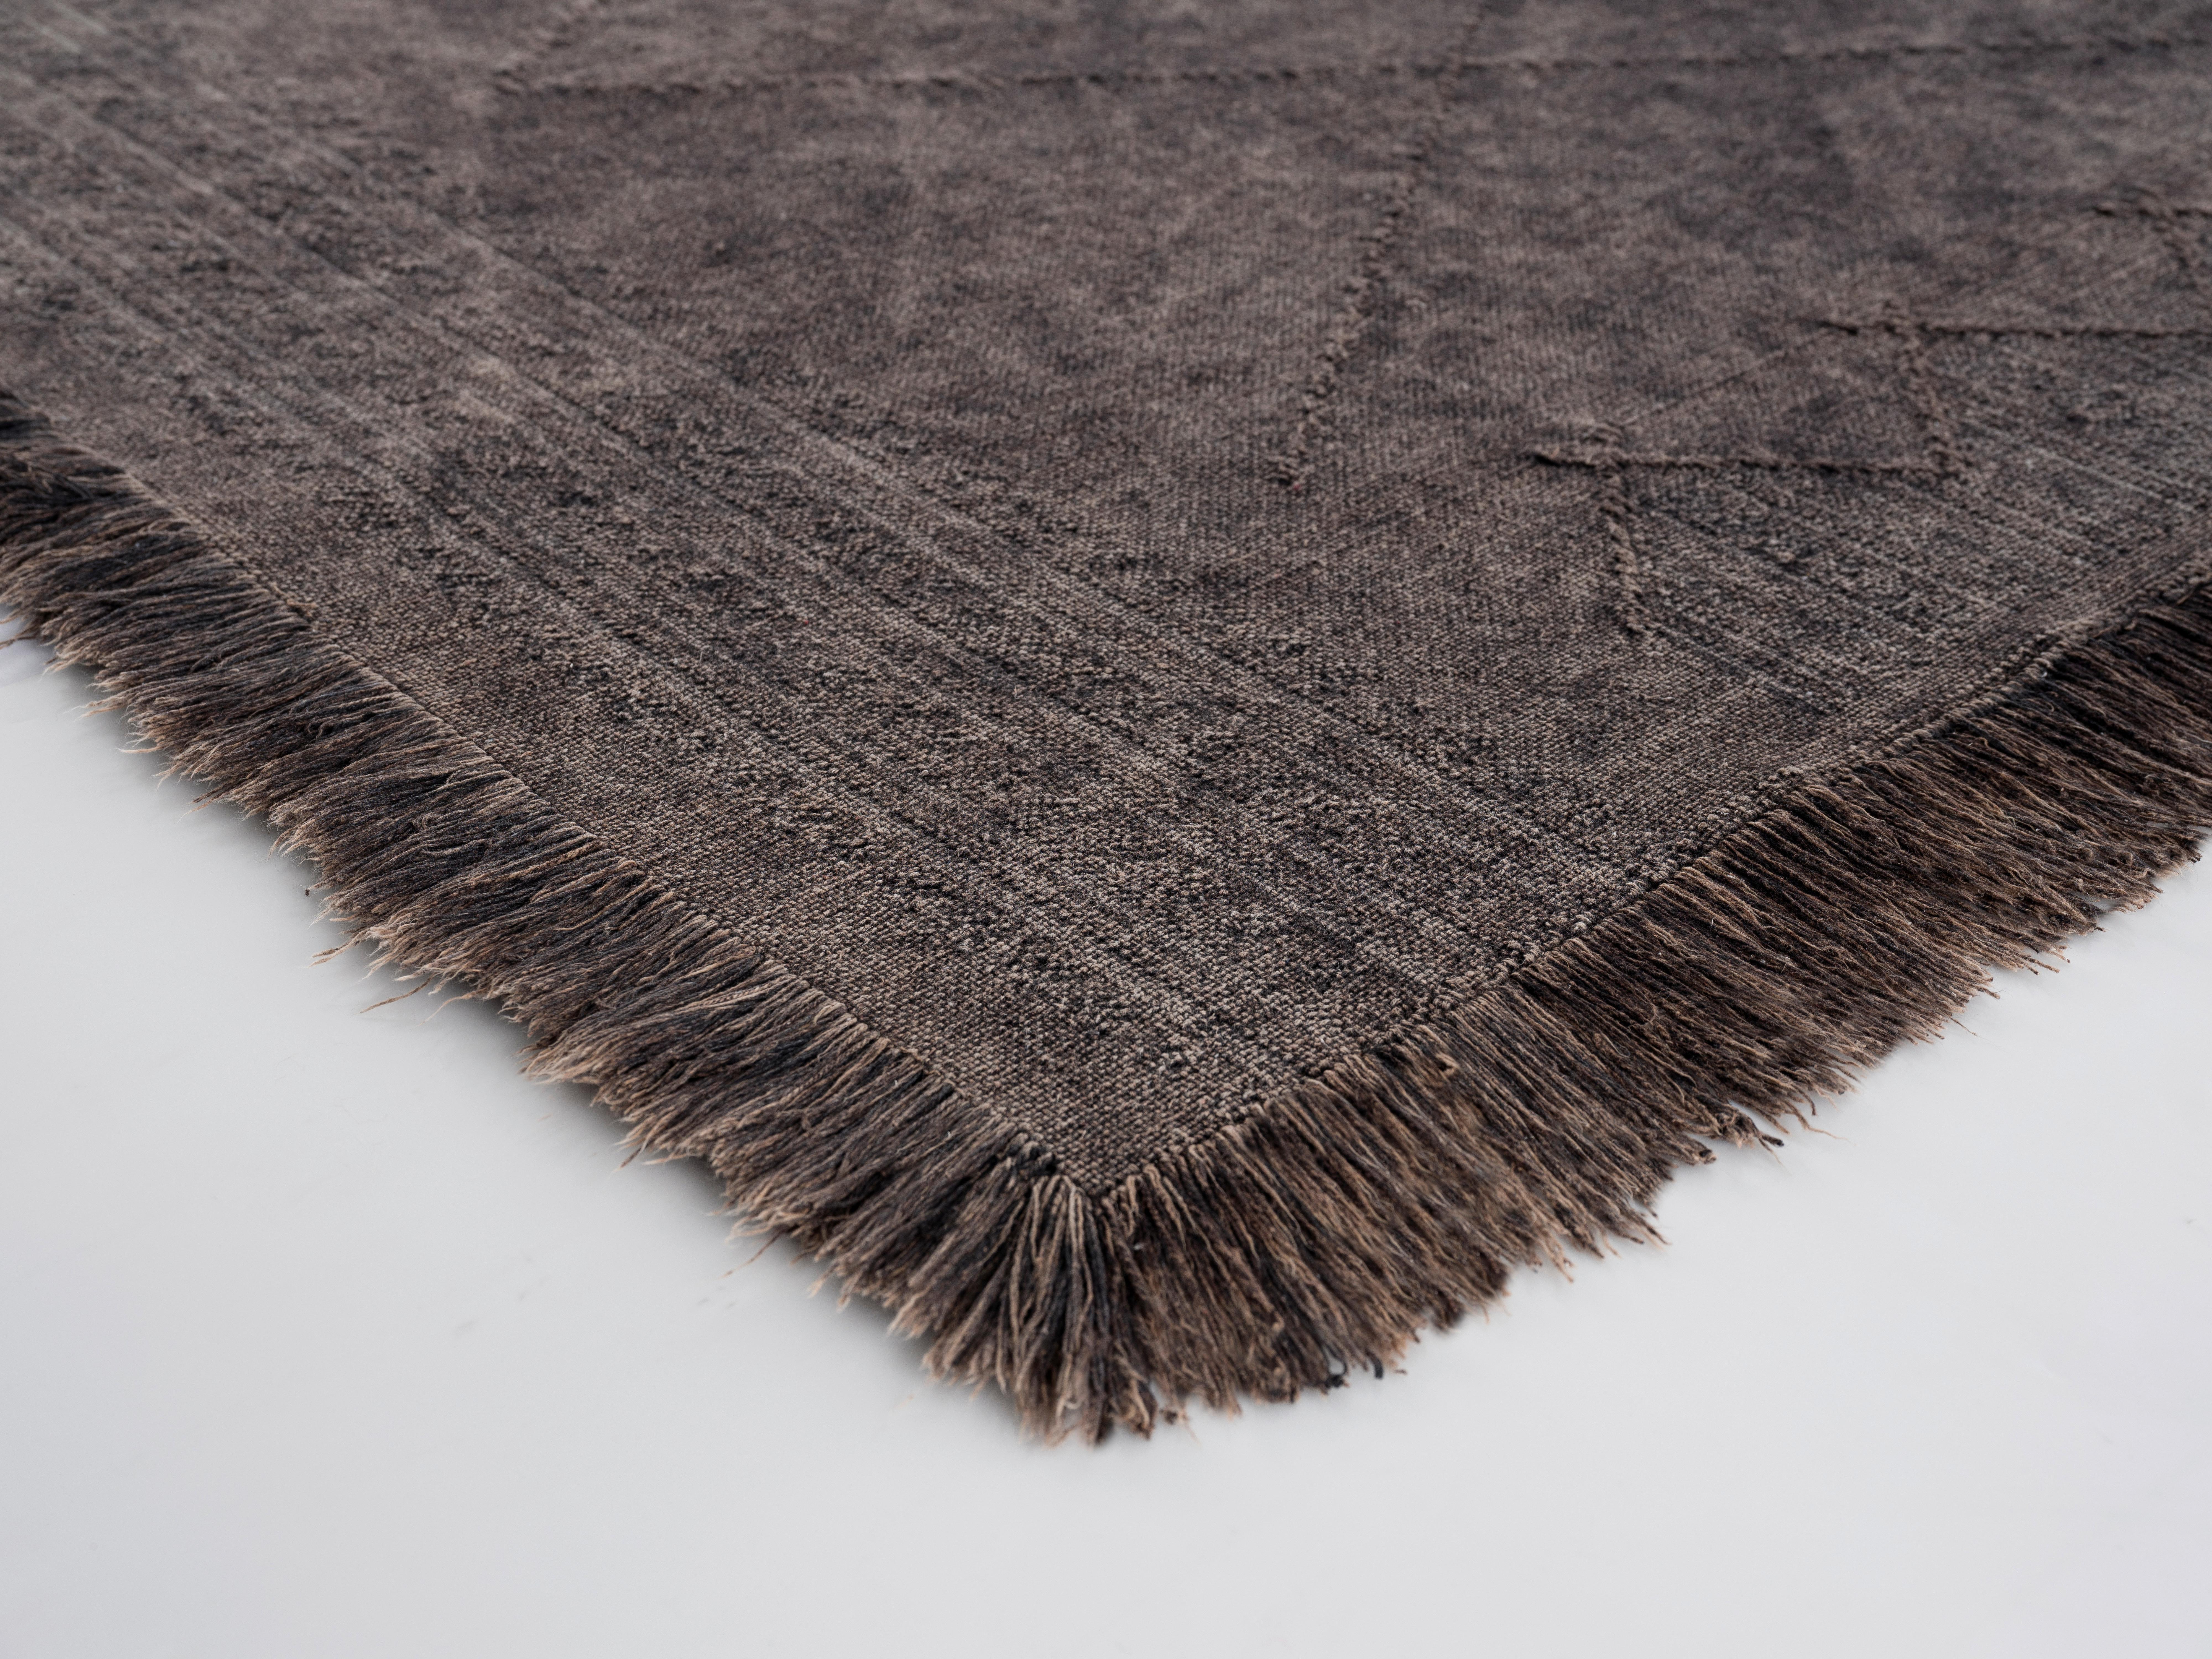 Ručno Tkani Tepih Monaco 1 - antracit, tekstil (80/150cm) - Modern Living